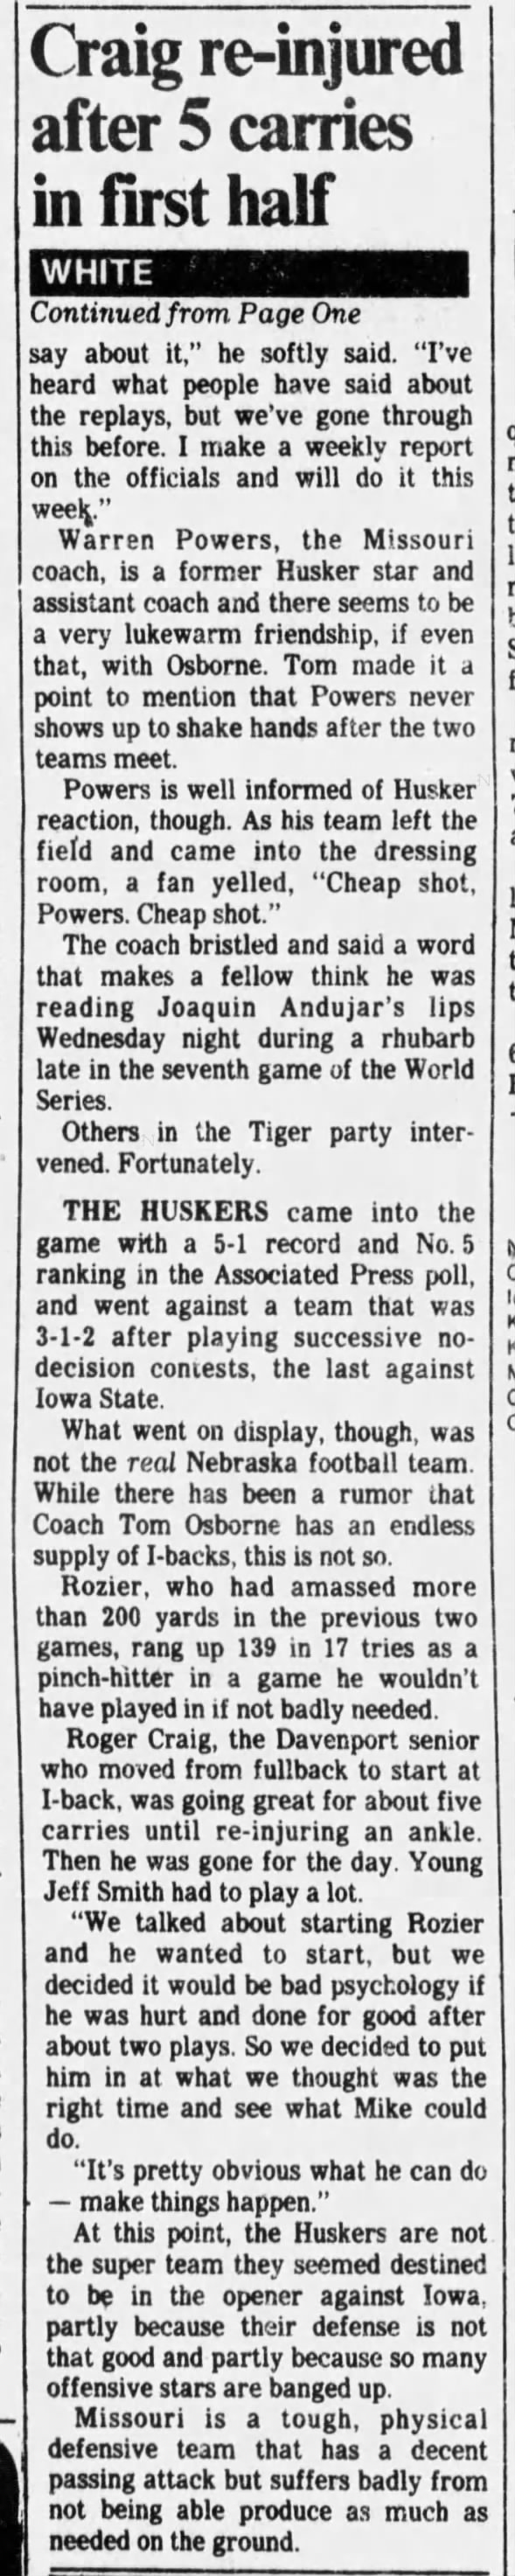 1982 Nebraska-Missouri, Des Moines Register, Maury White column part 2